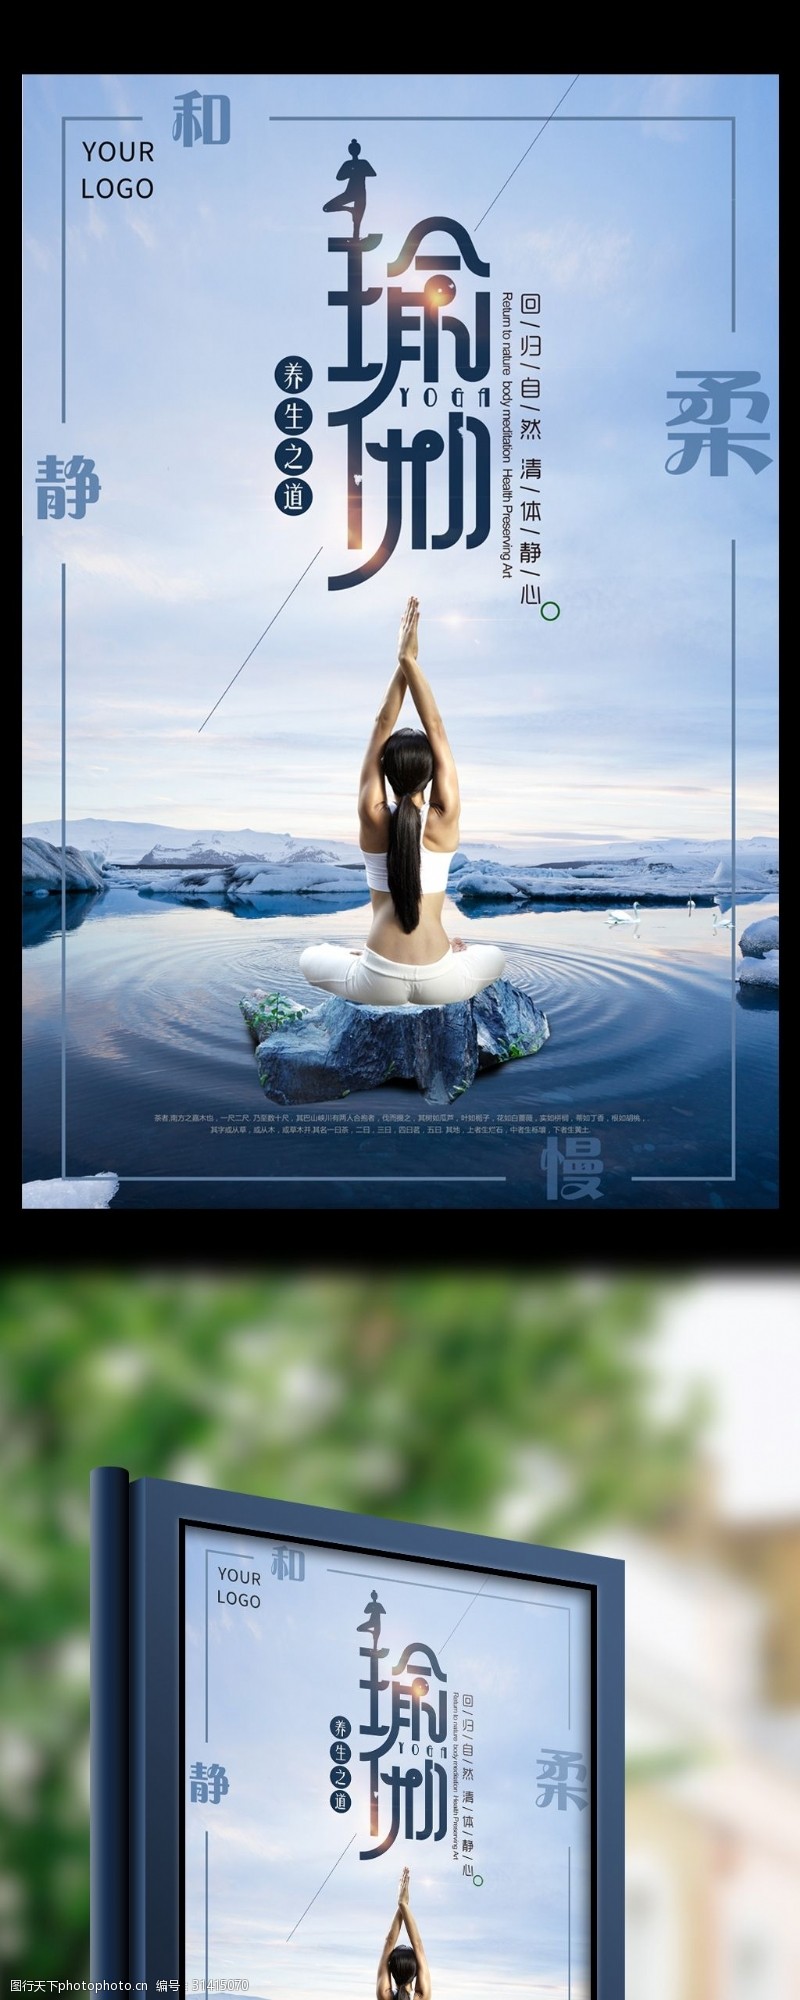 瑜伽中心中国风创意美女瑜伽馆海报模板设计